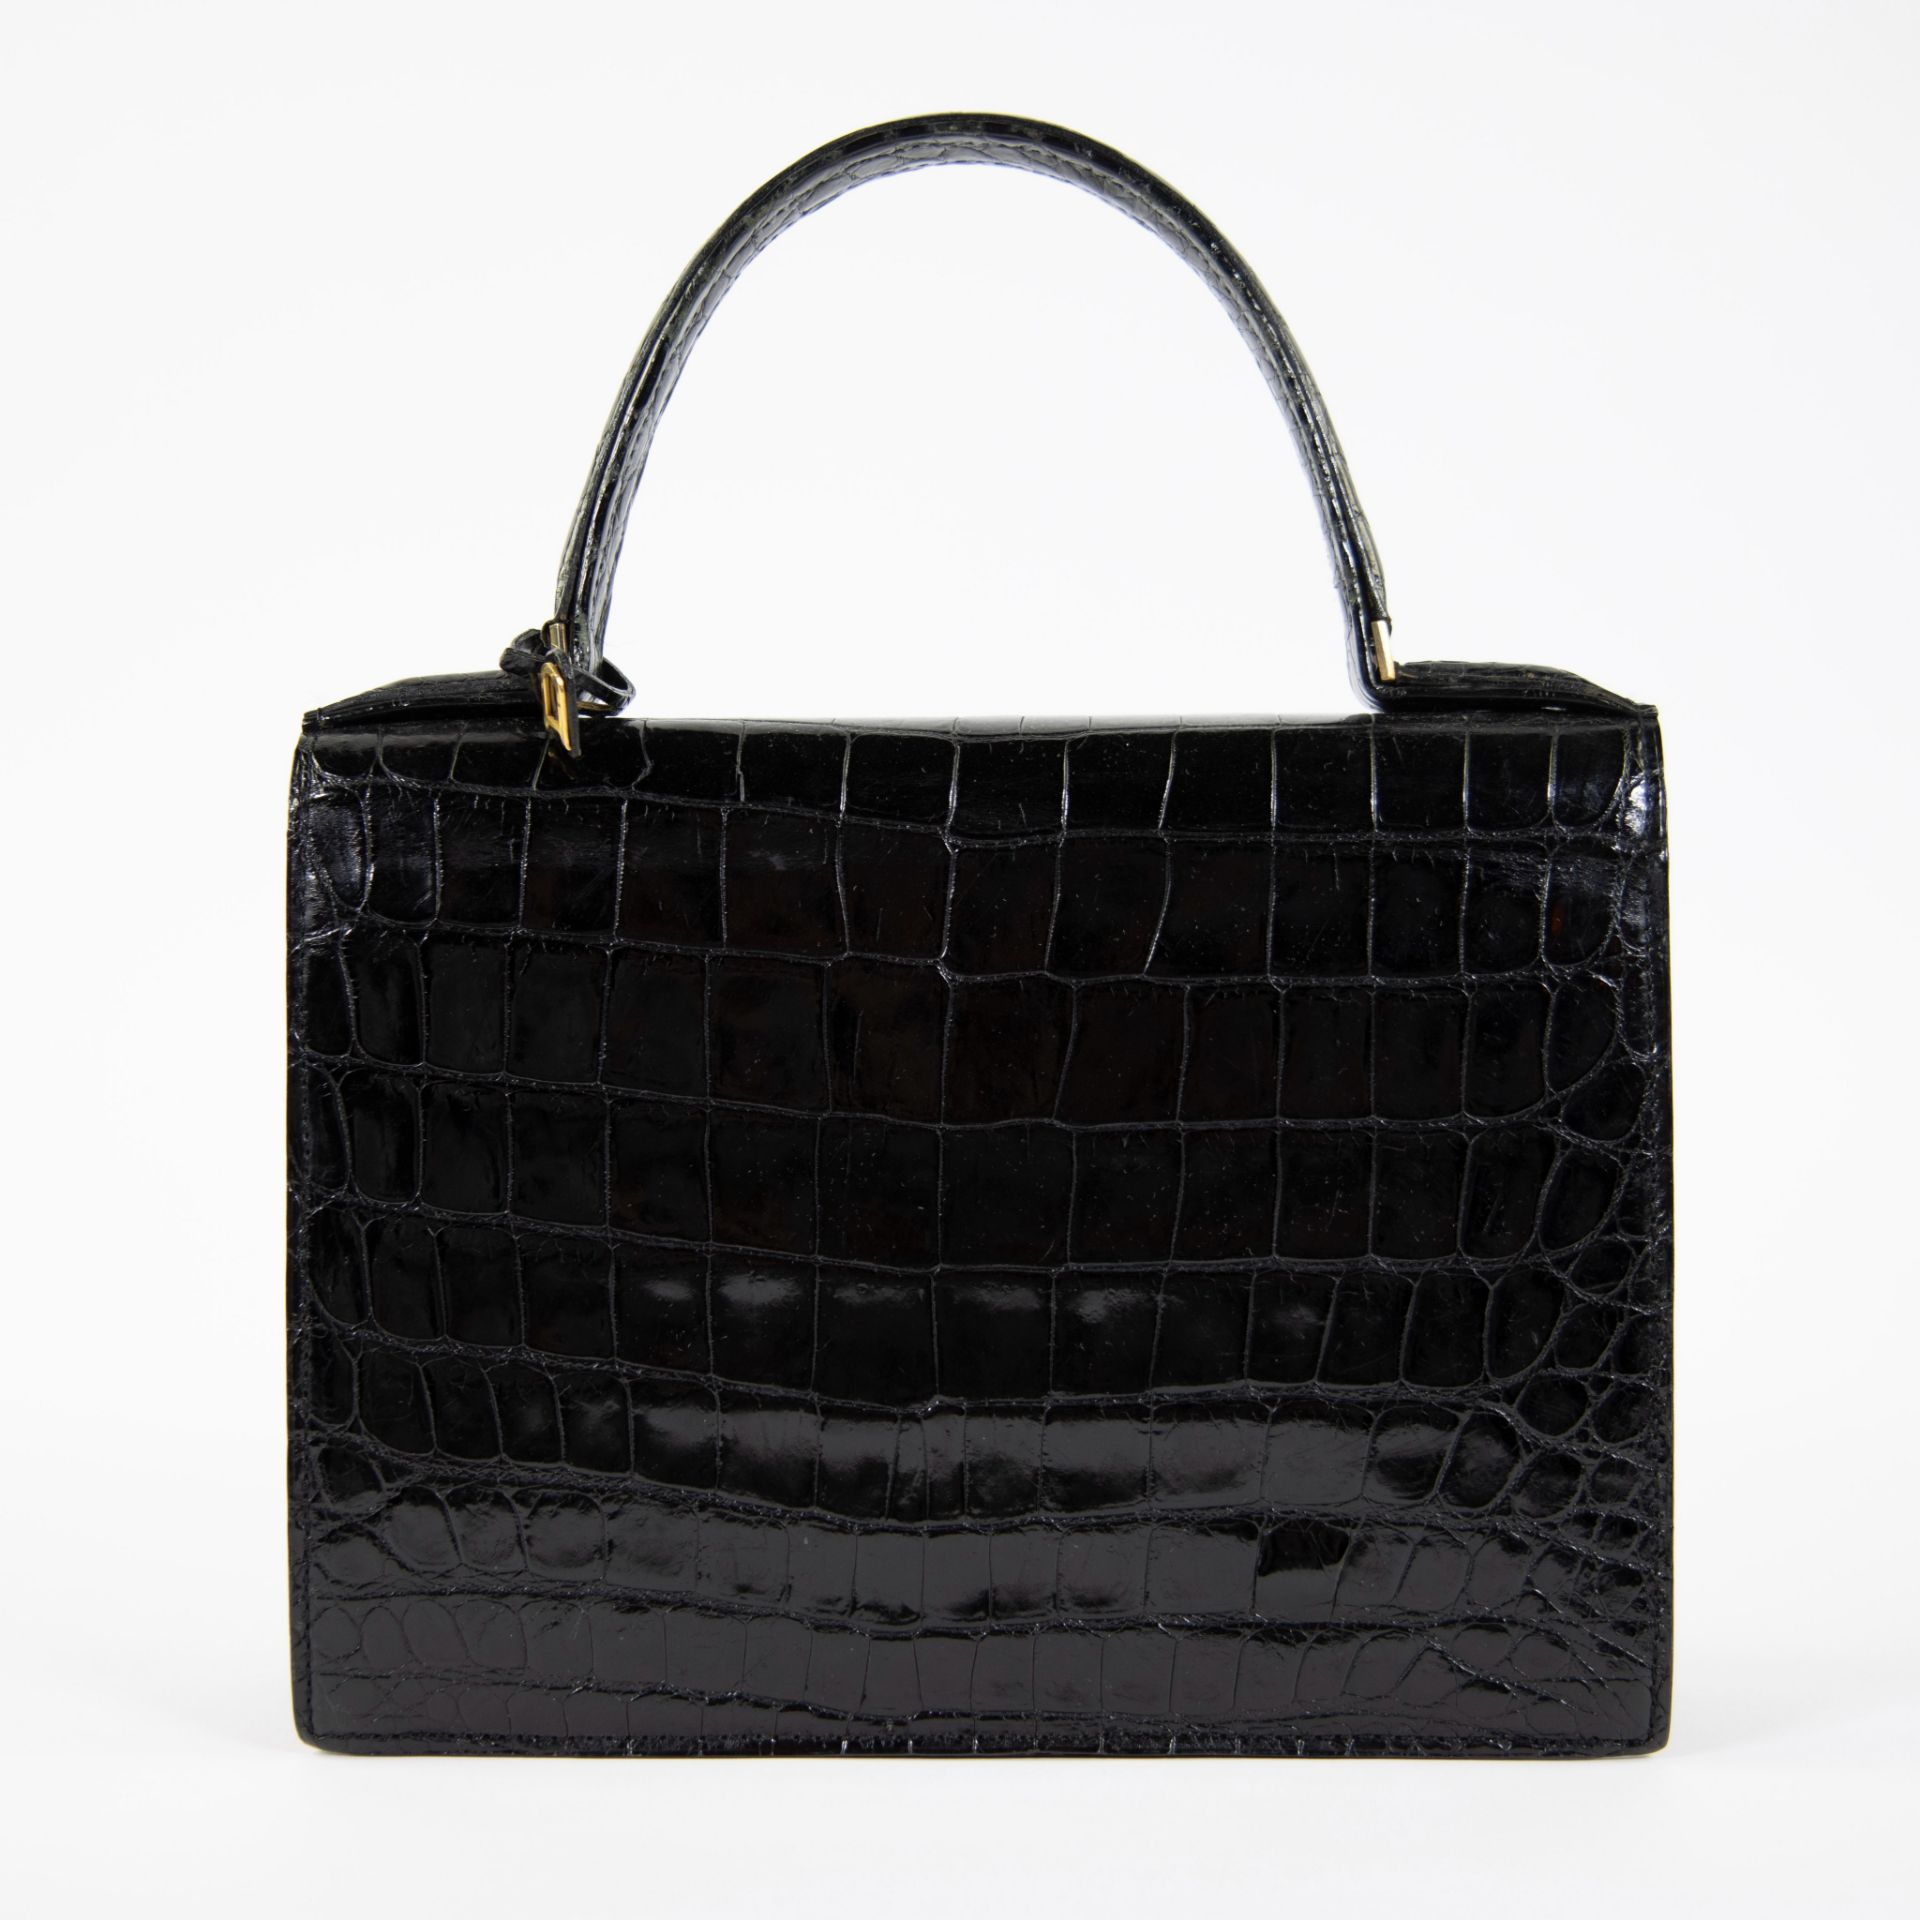 Vintage Delvaux handbag in crocodile - Image 3 of 5